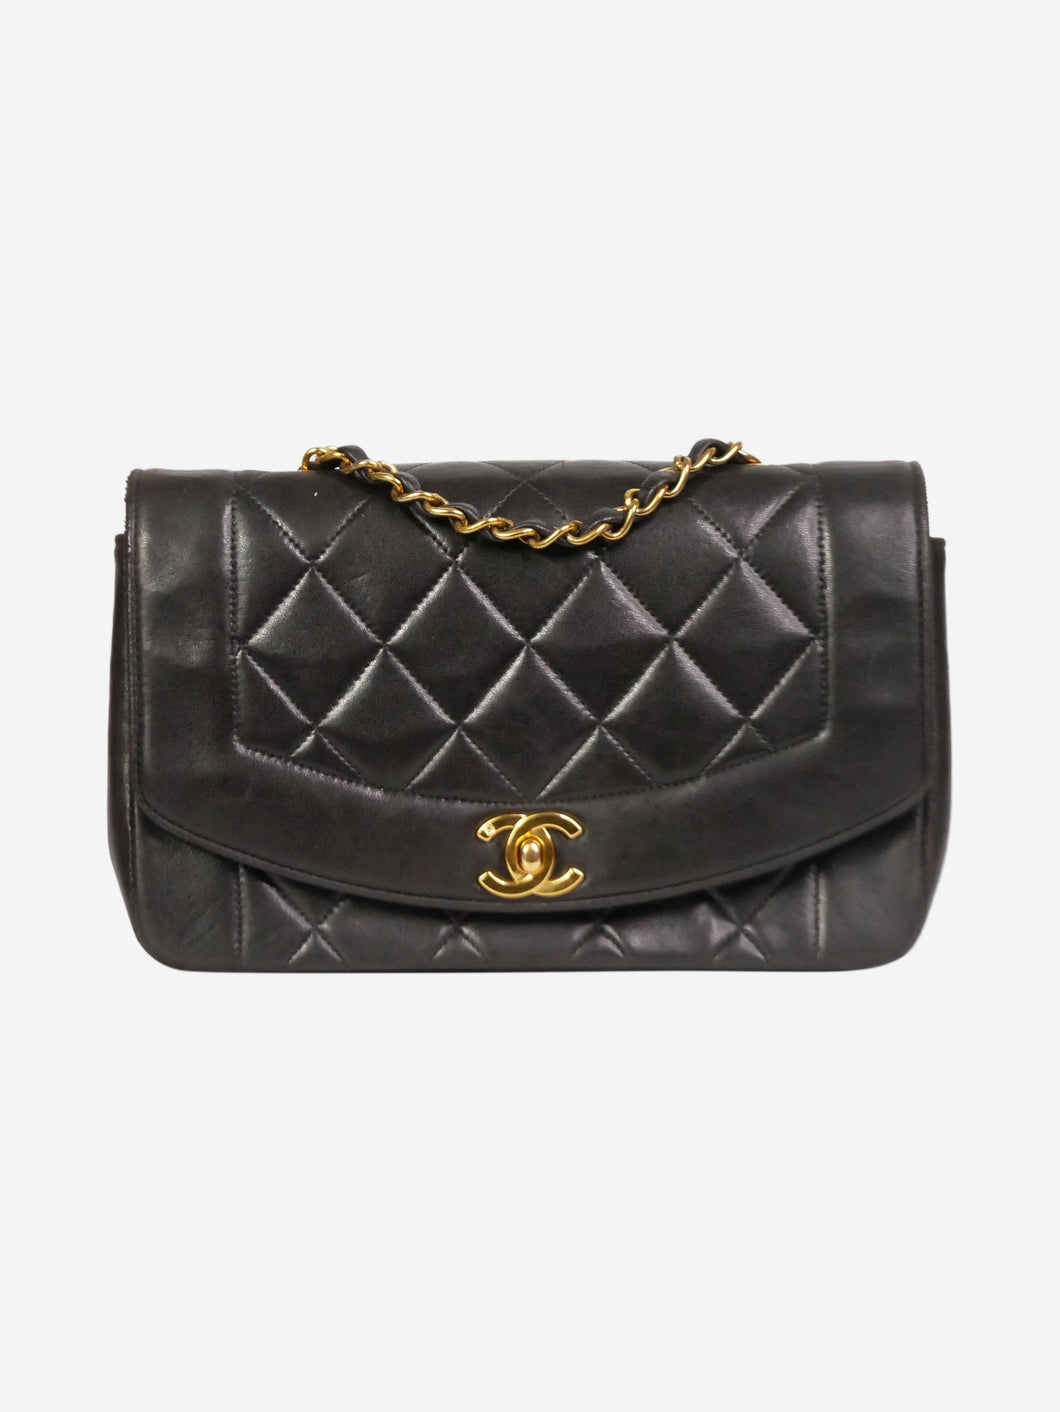 Black leather small vintage 1994-1996 Diana gold hardware flap bag Shoulder bags Chanel 